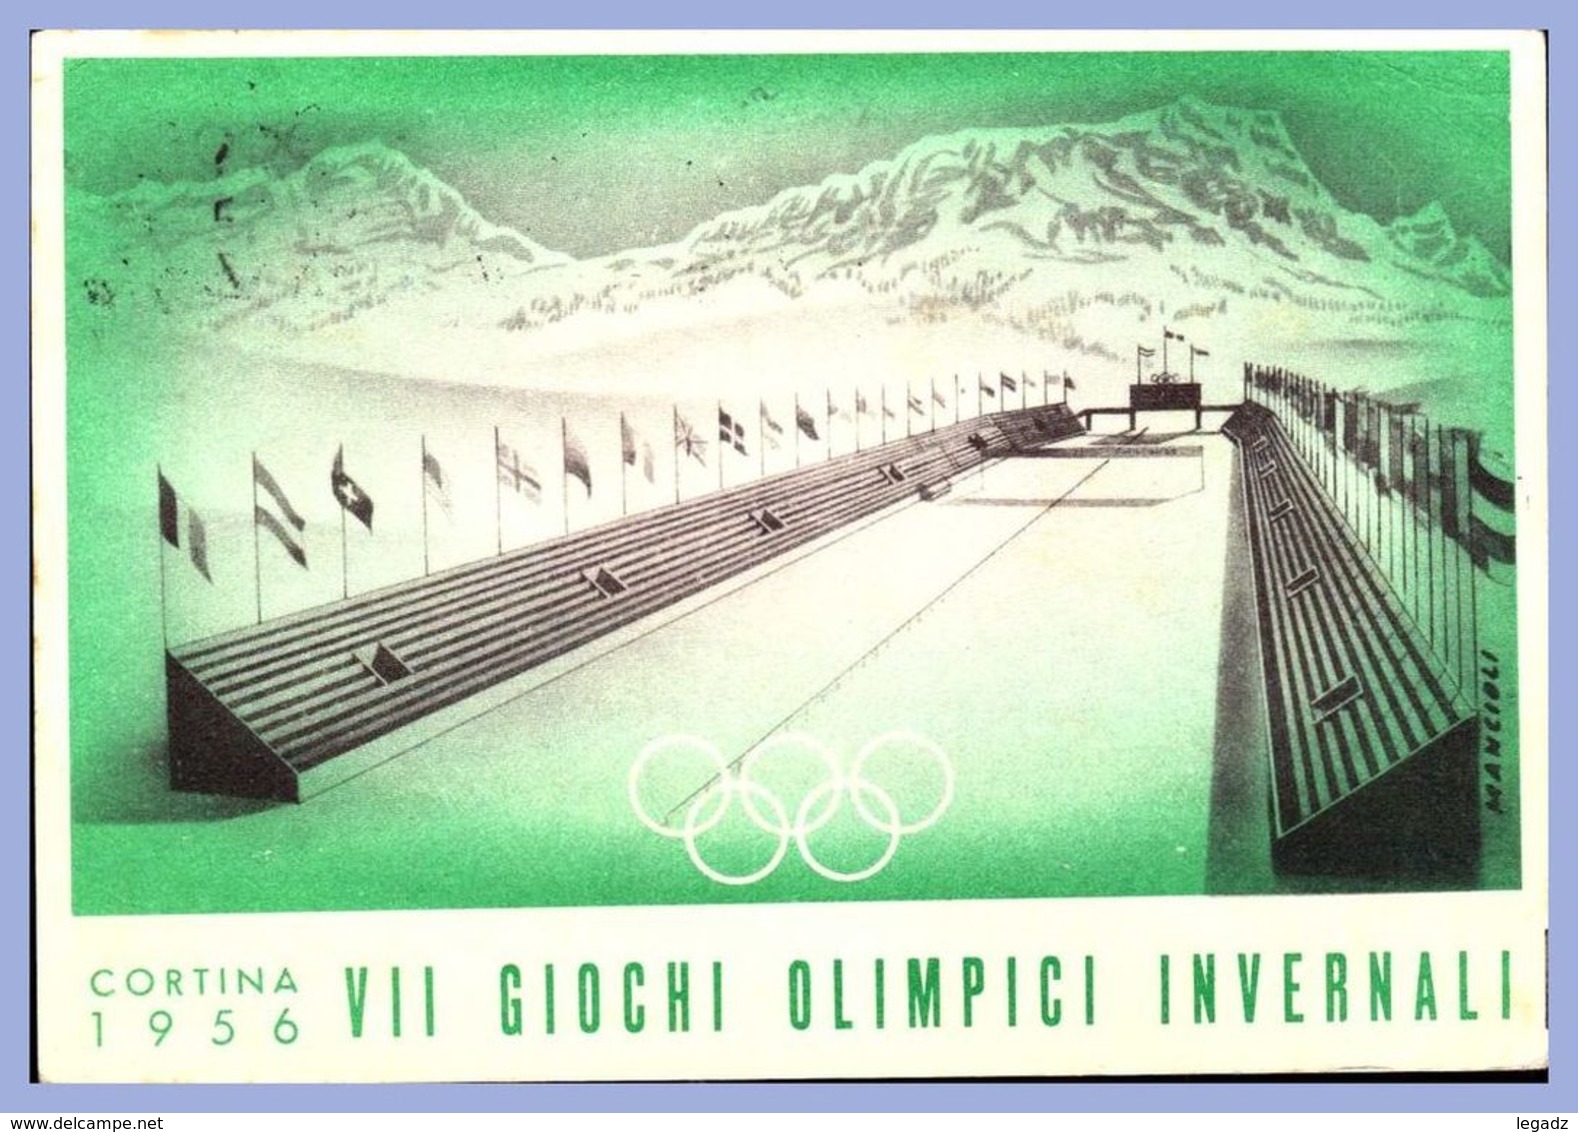 Carte Philatelique - 26 Gen - 5 Feb 1956 - Cortina (Italie) - 10L. VII Giochi Olimpici Invernali - Cerimonia D'Apertura - Inverno1956: Cortina D'Ampezzo